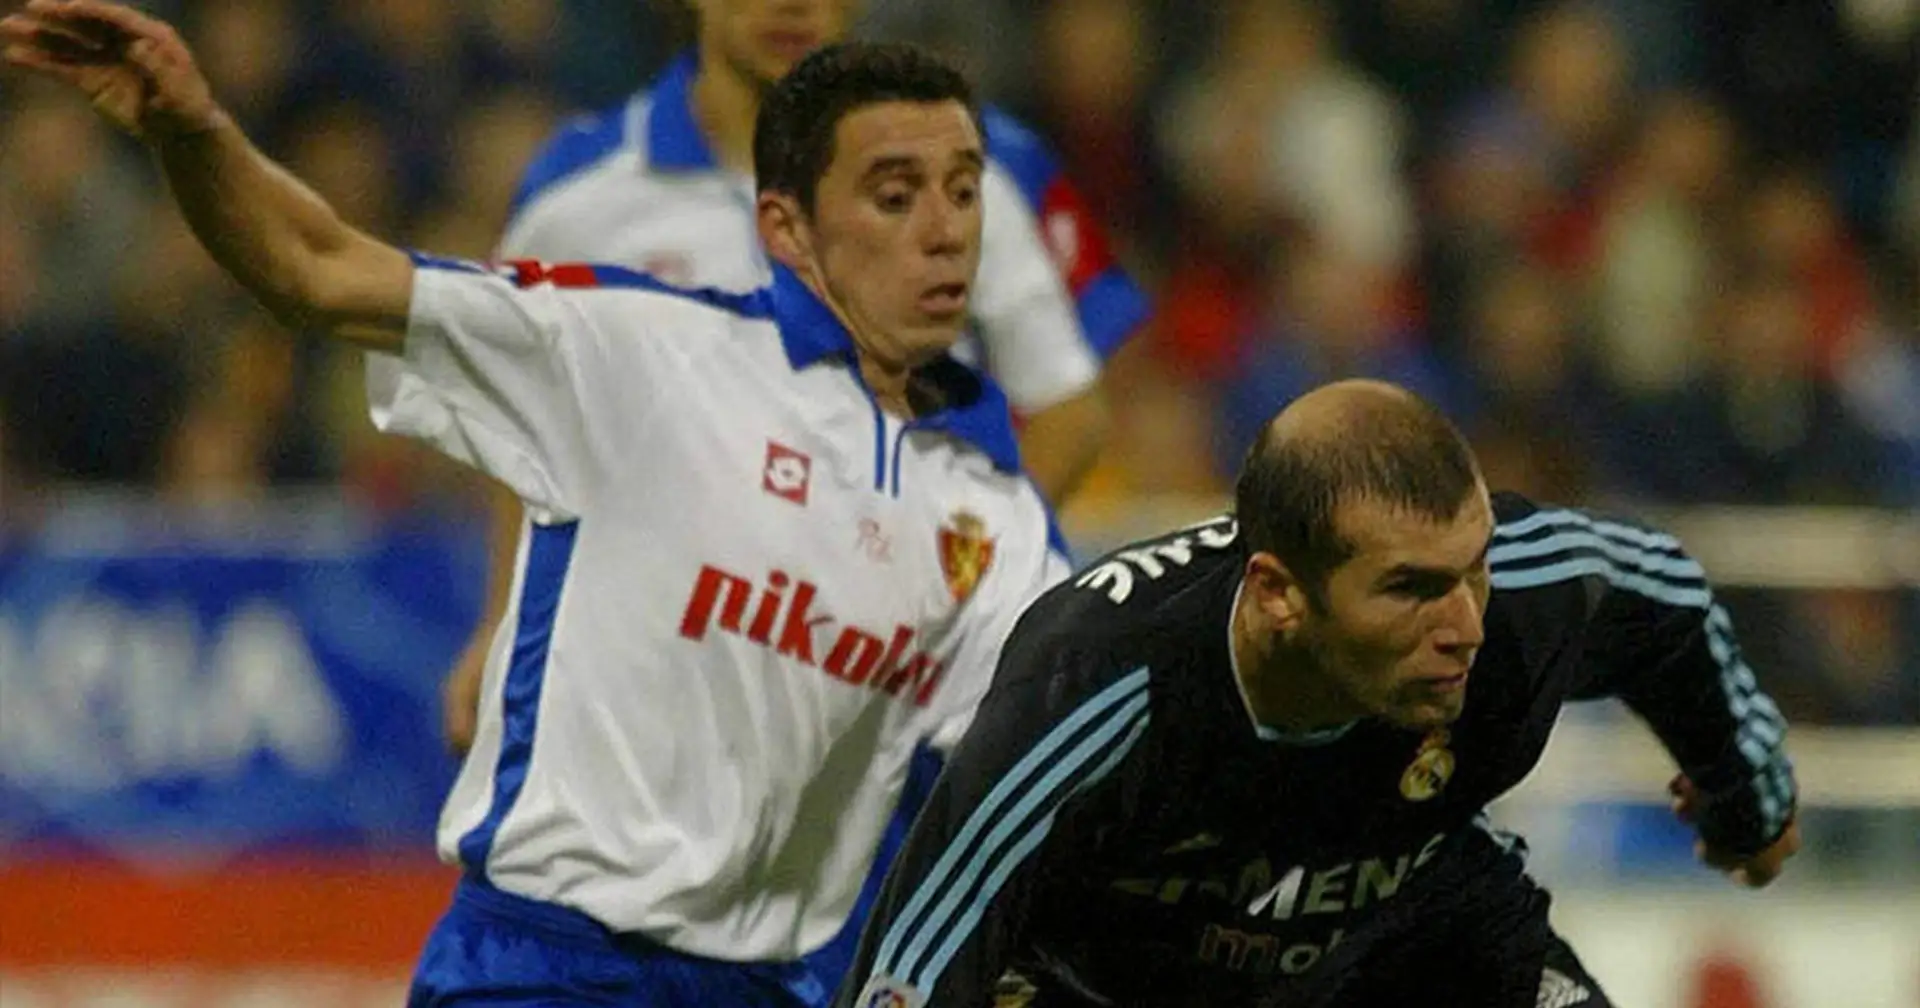 Rebosio recuerda su caño a Zidane: "Me dijo 'otro más, no'"